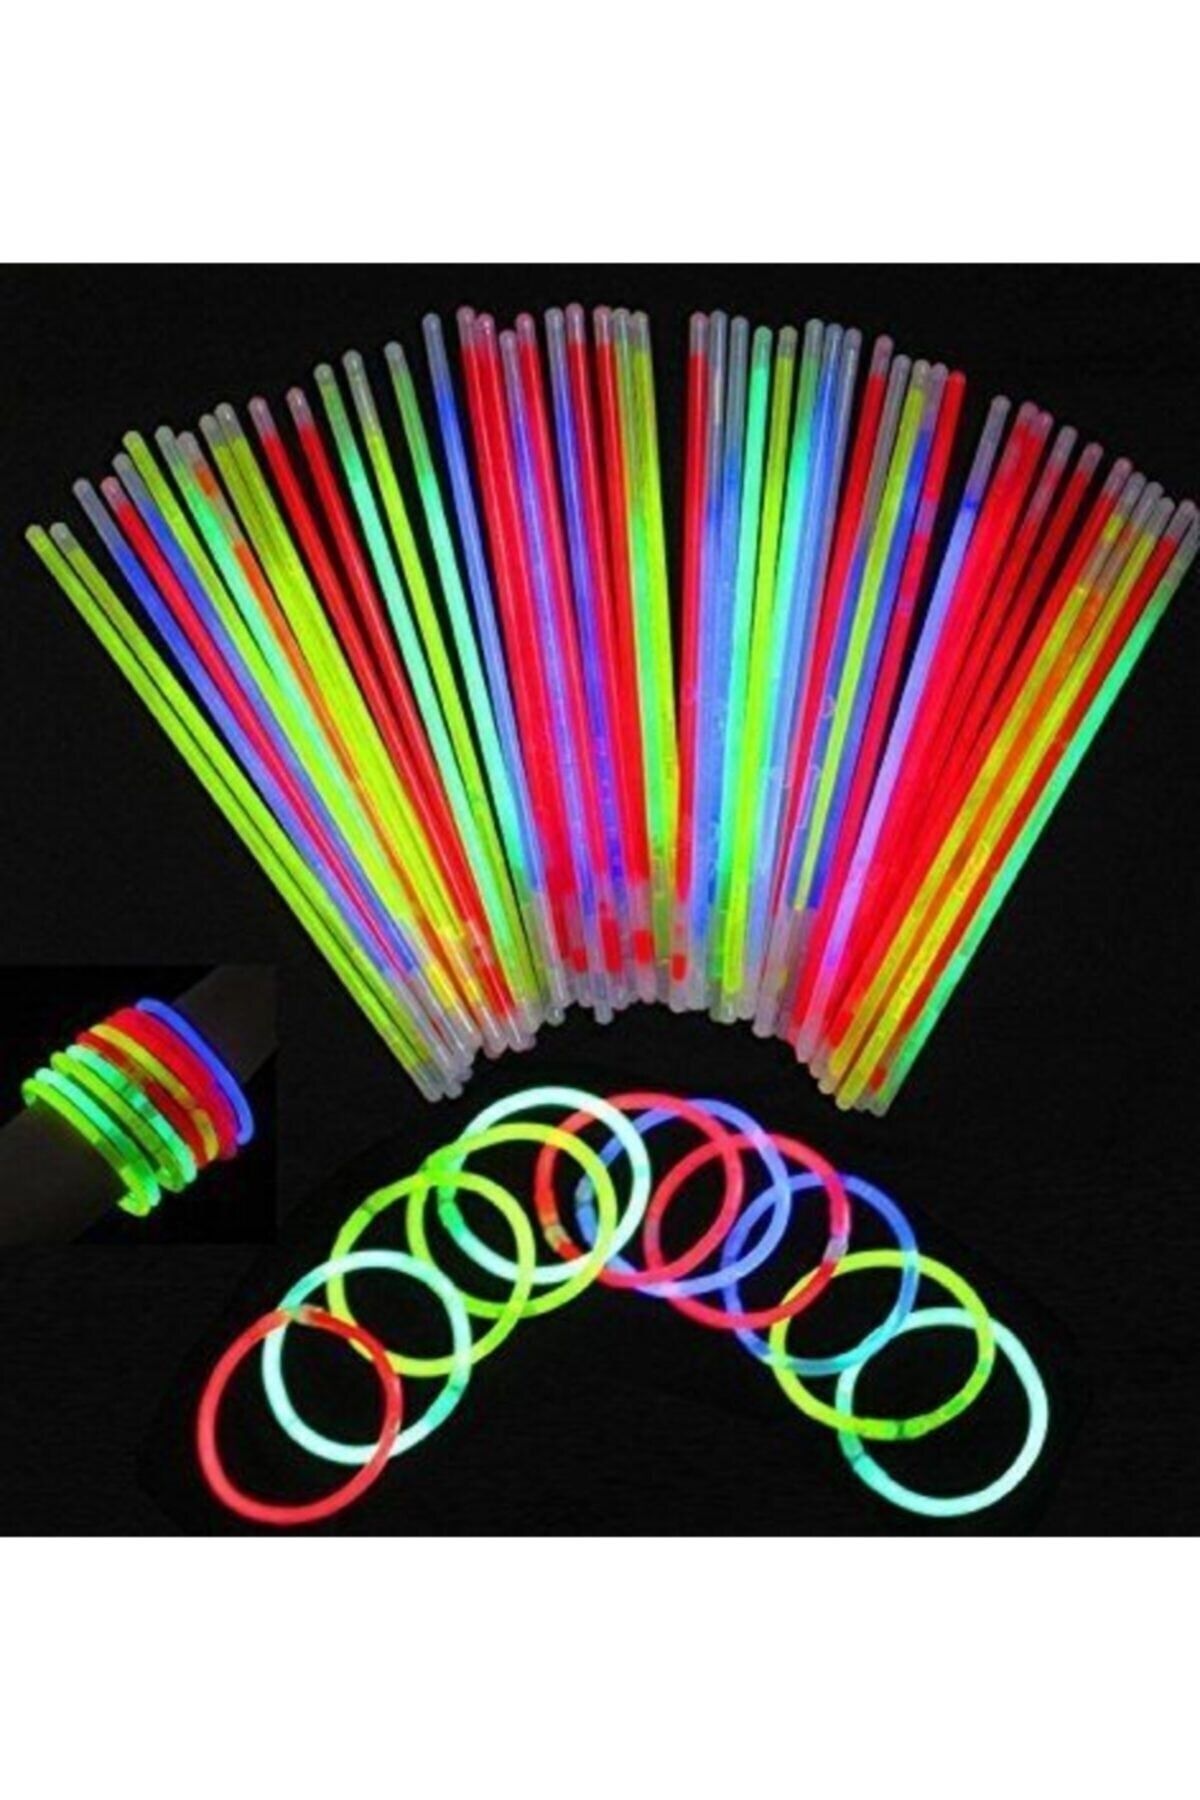 pazariz Neon Işıklı Glowstick Bileklik Set (50 Adet)